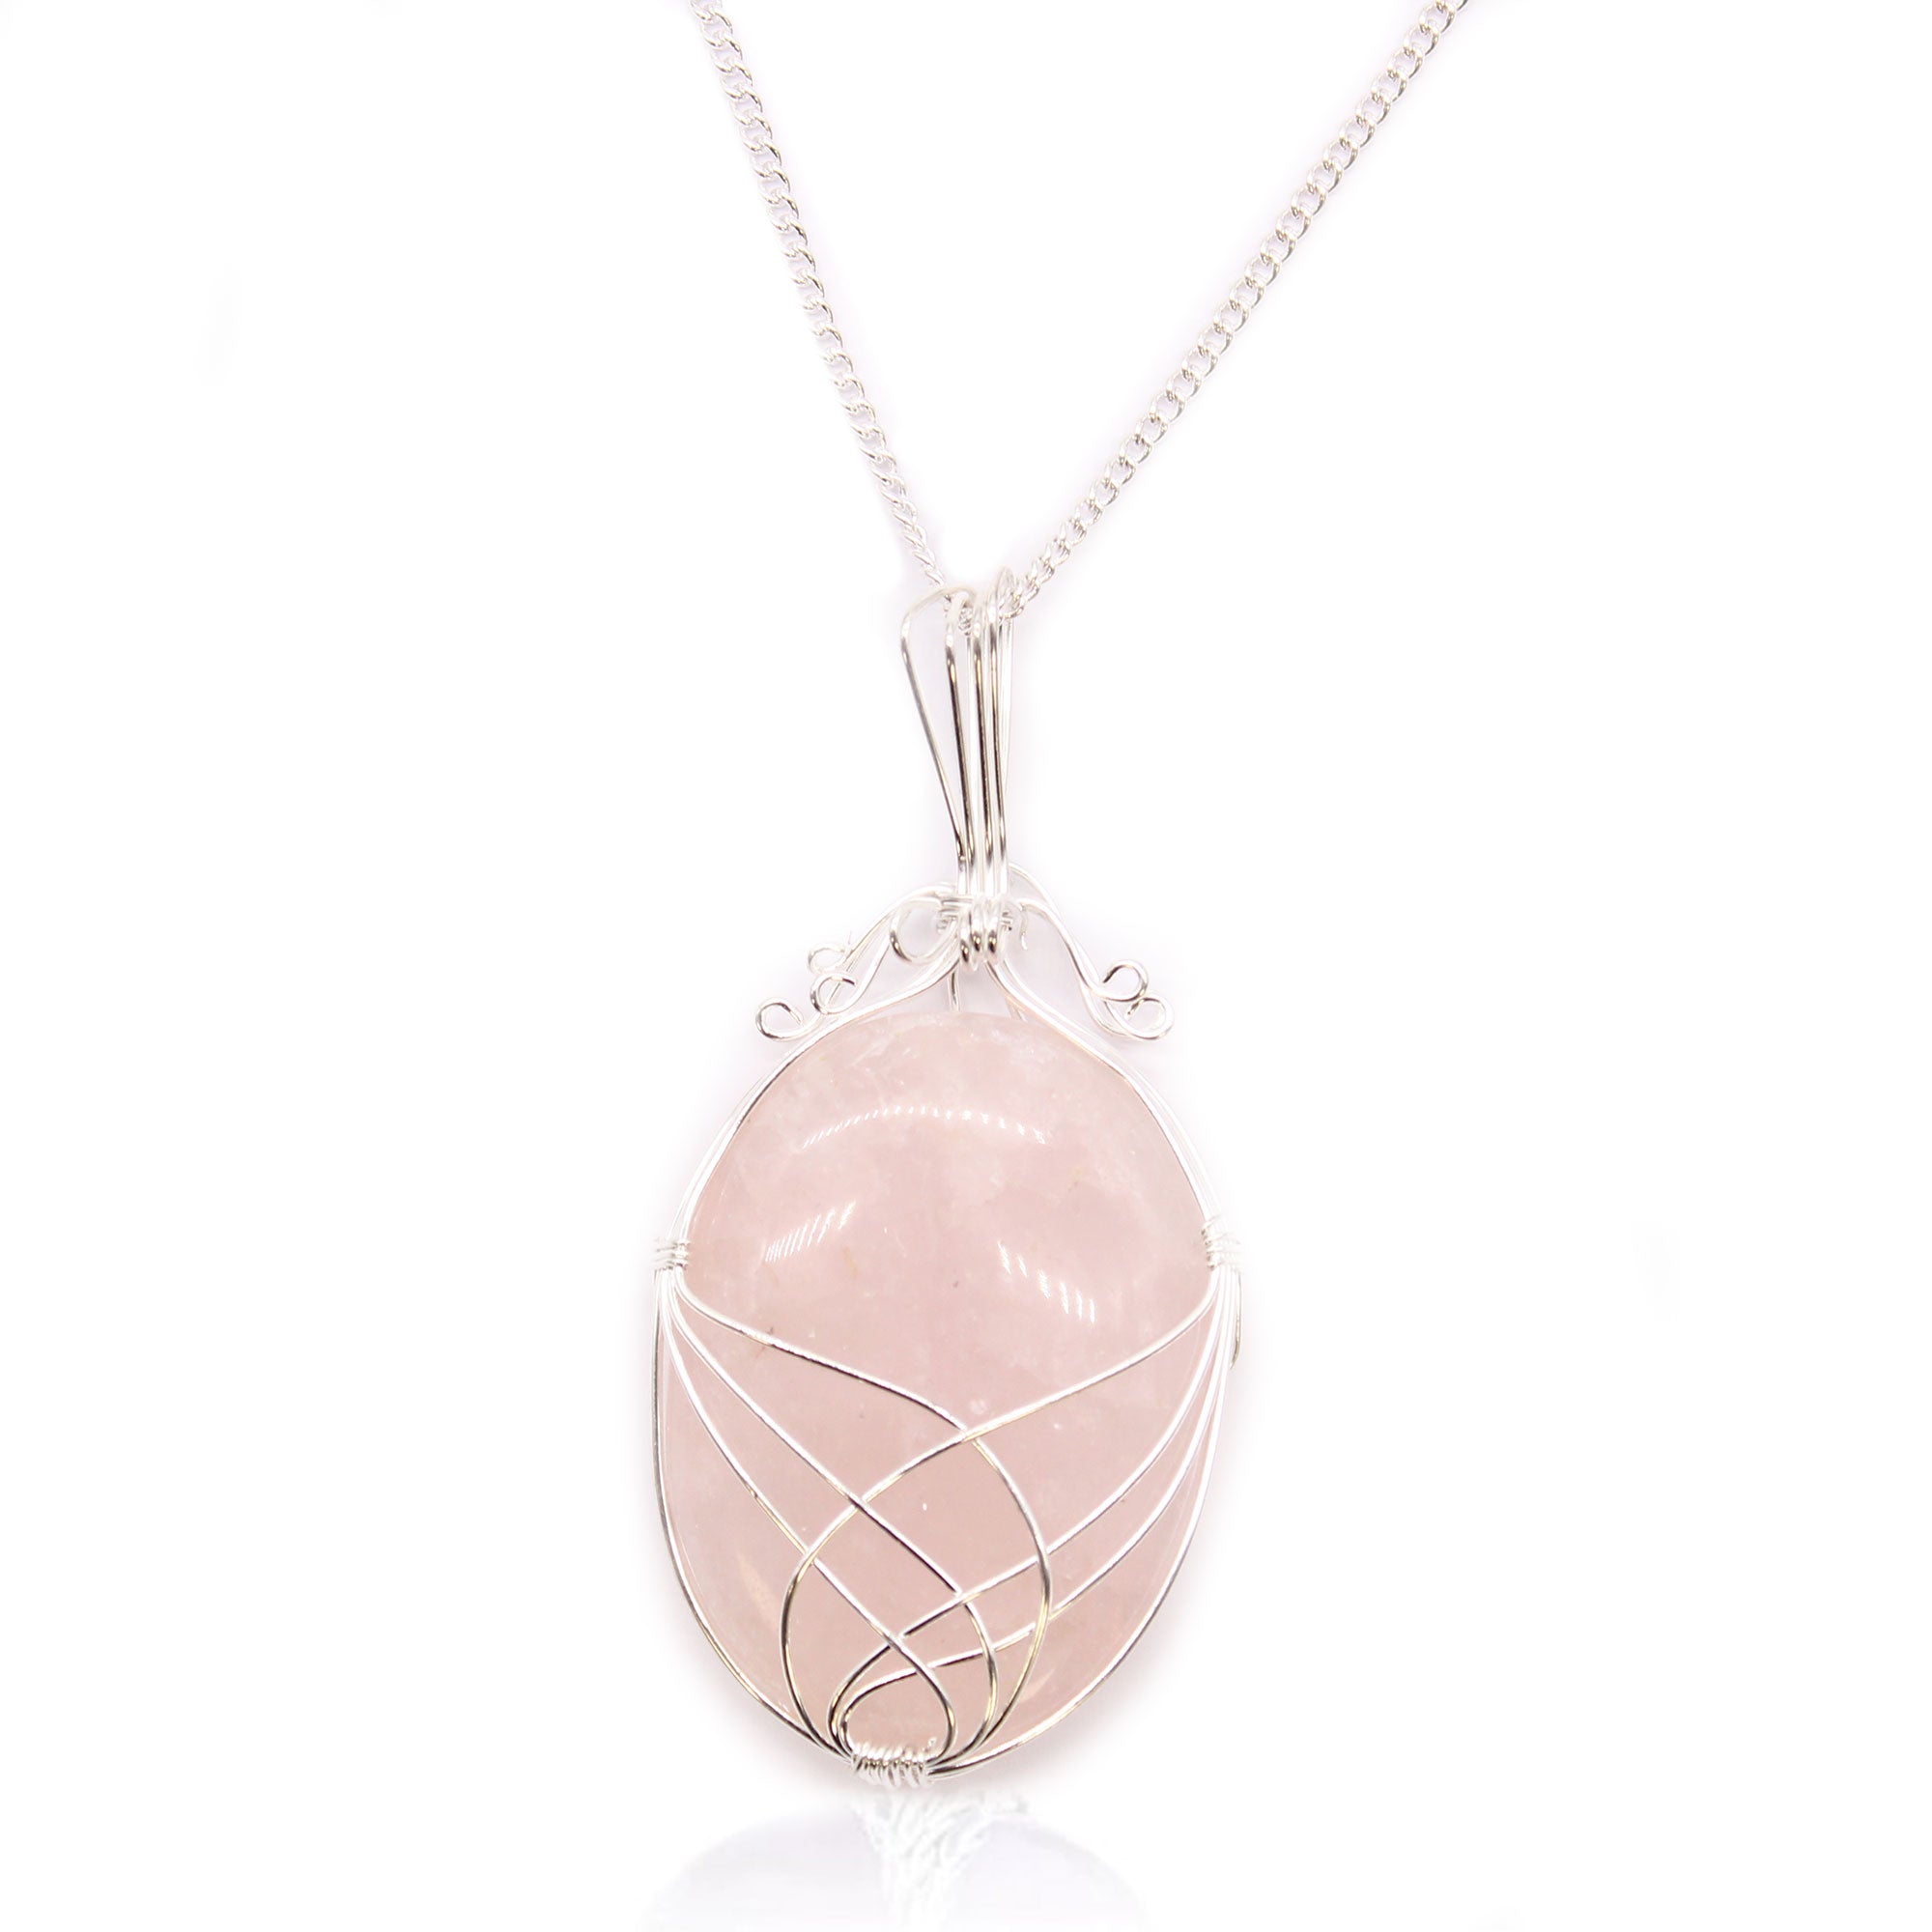 Swirl Wrapped Gemstone Necklace - Rose Quartz